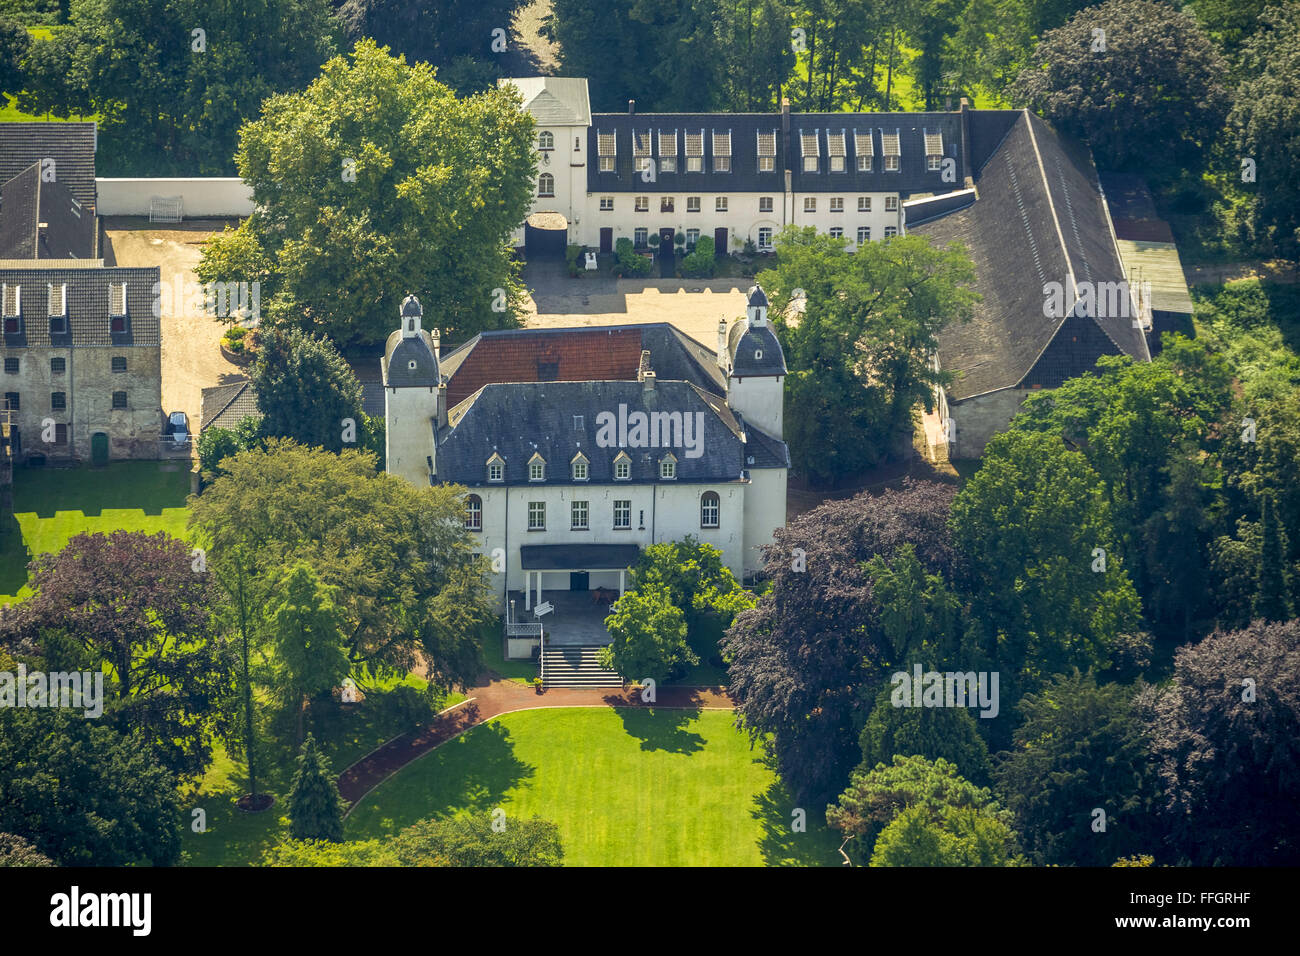 Luftaufnahme, Schloss Lauersfort, Moers, Kapellen Ruhr Region, Nordrhein-Westfalen, Deutschland, Europa, Luftaufnahme, Vögel-Augen-Blick Stockfoto